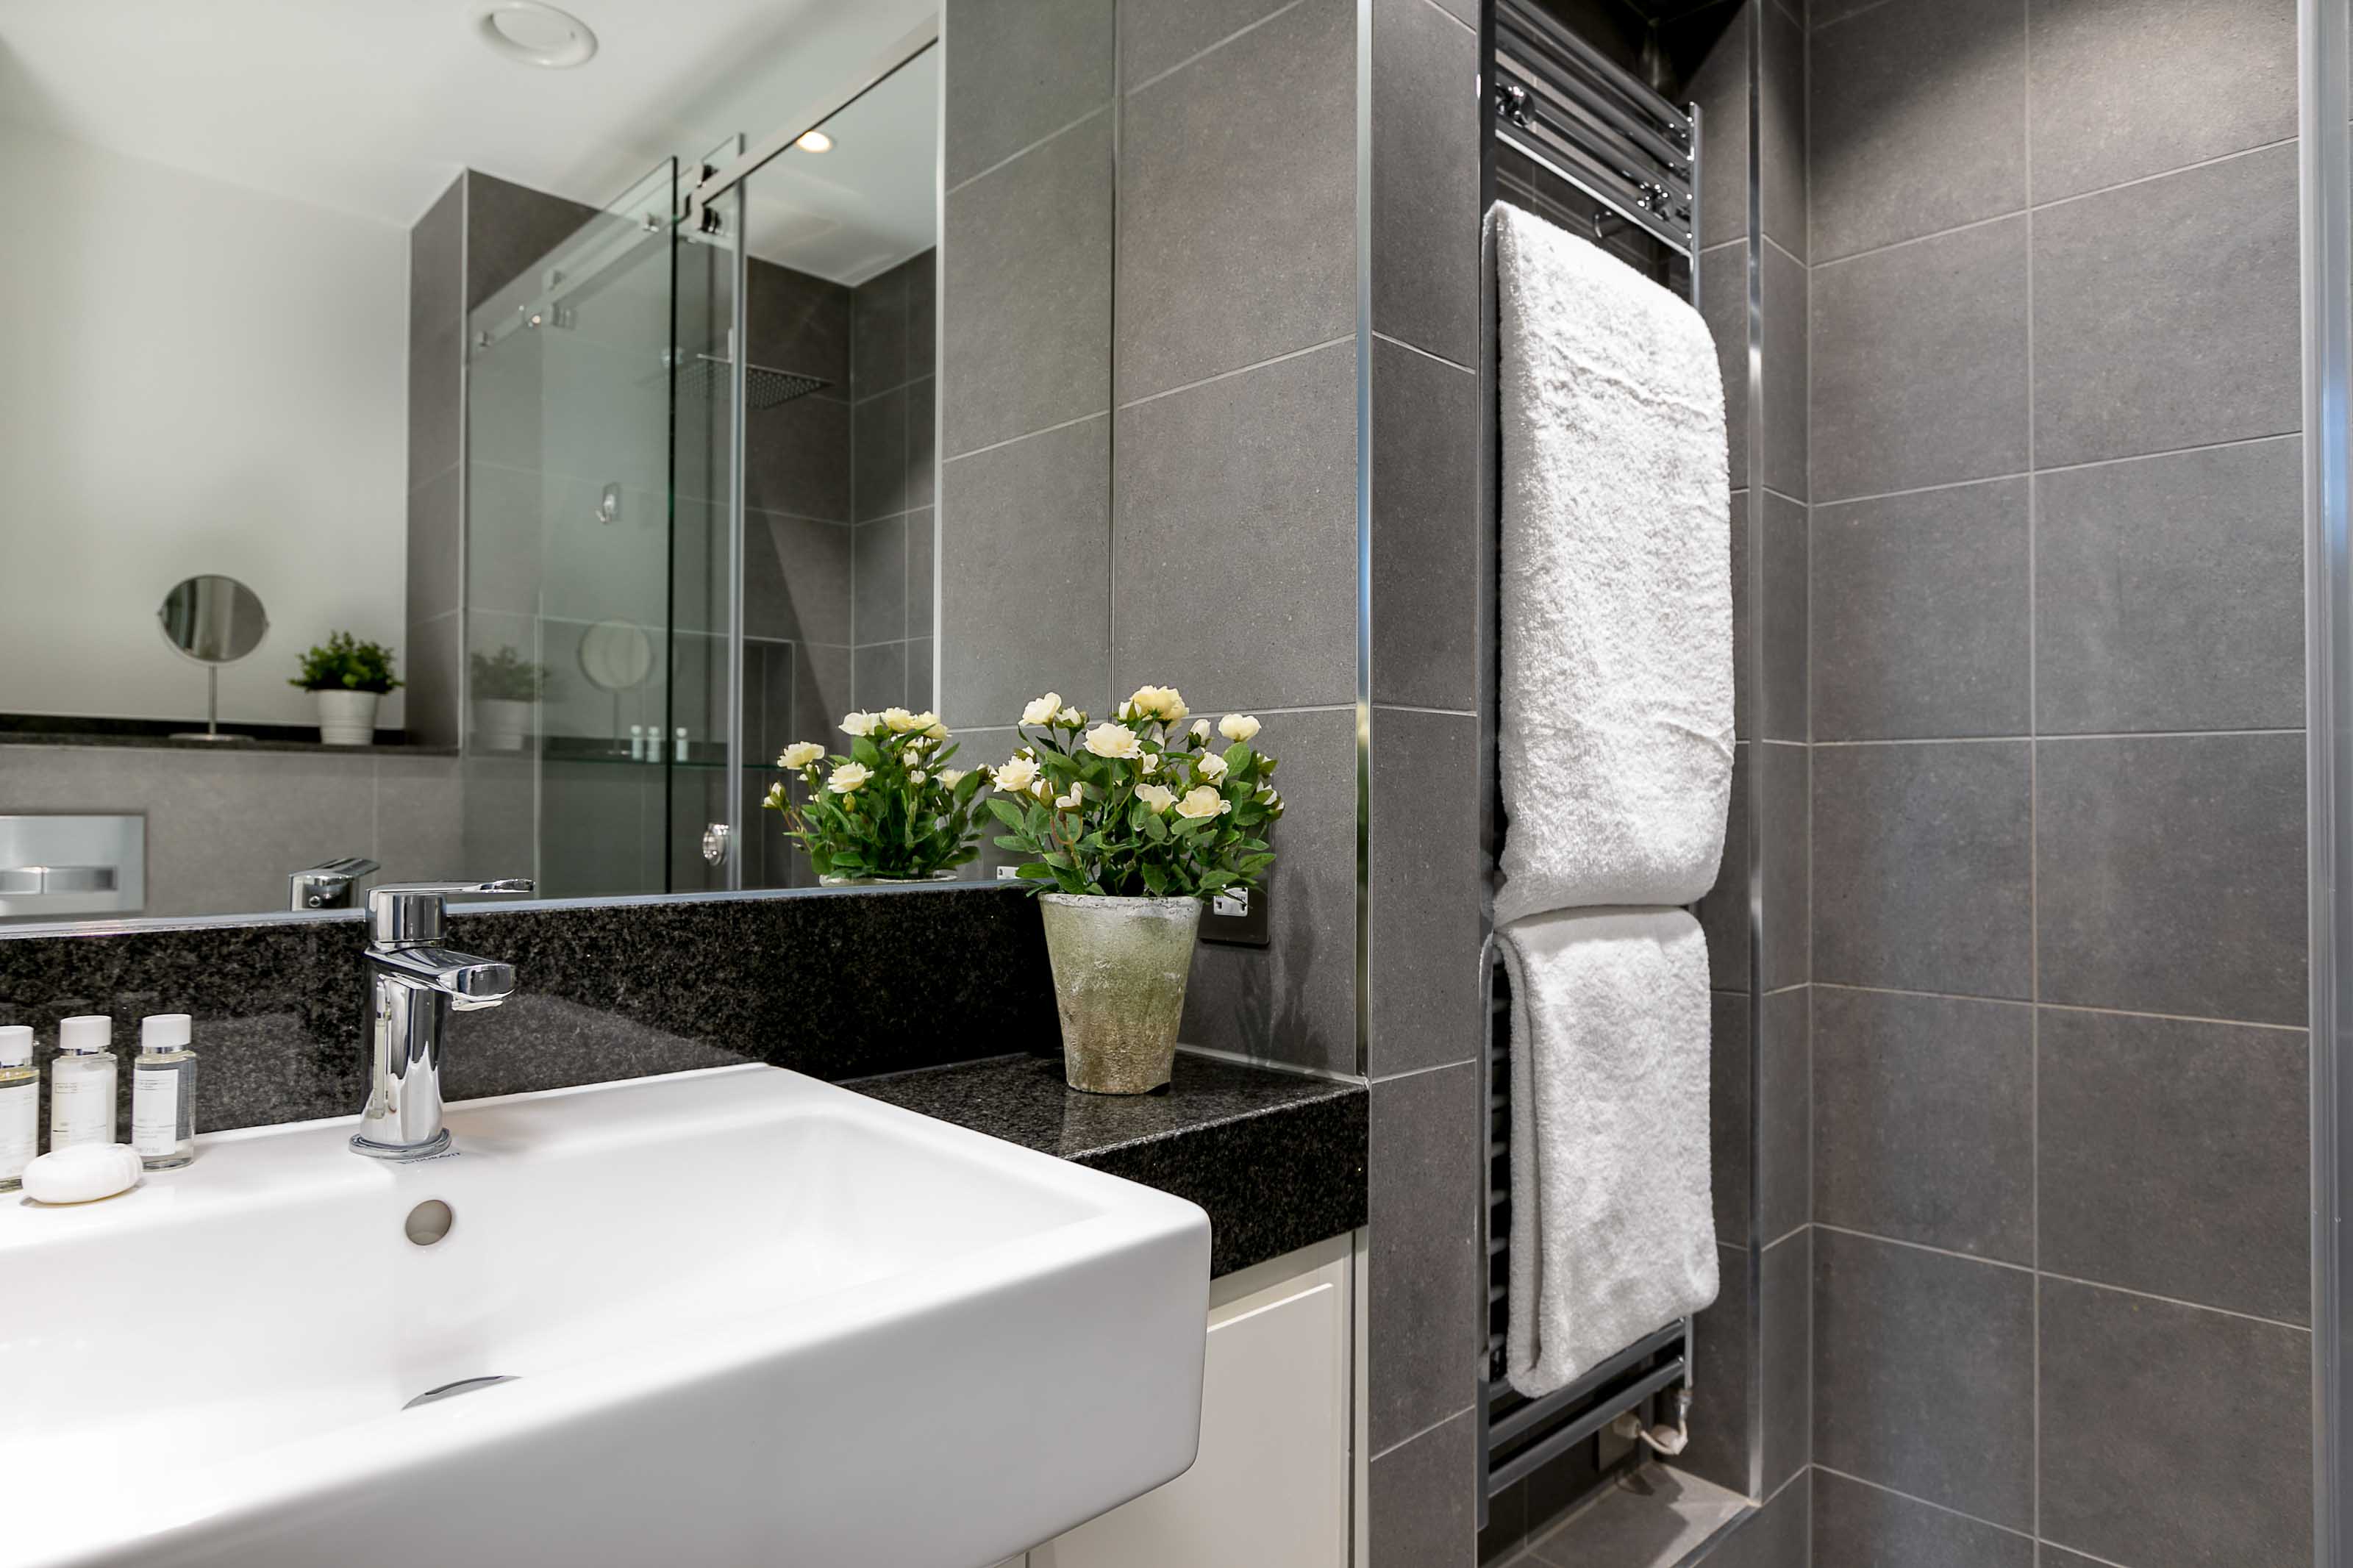 Lovelydays luxury service apartment rental - London - Covent Garden - Prince's House 605 - Lovelysuite - 2 bedrooms - 2 bathrooms - Lovely shower - c0ac4b889603 - Lovelydays